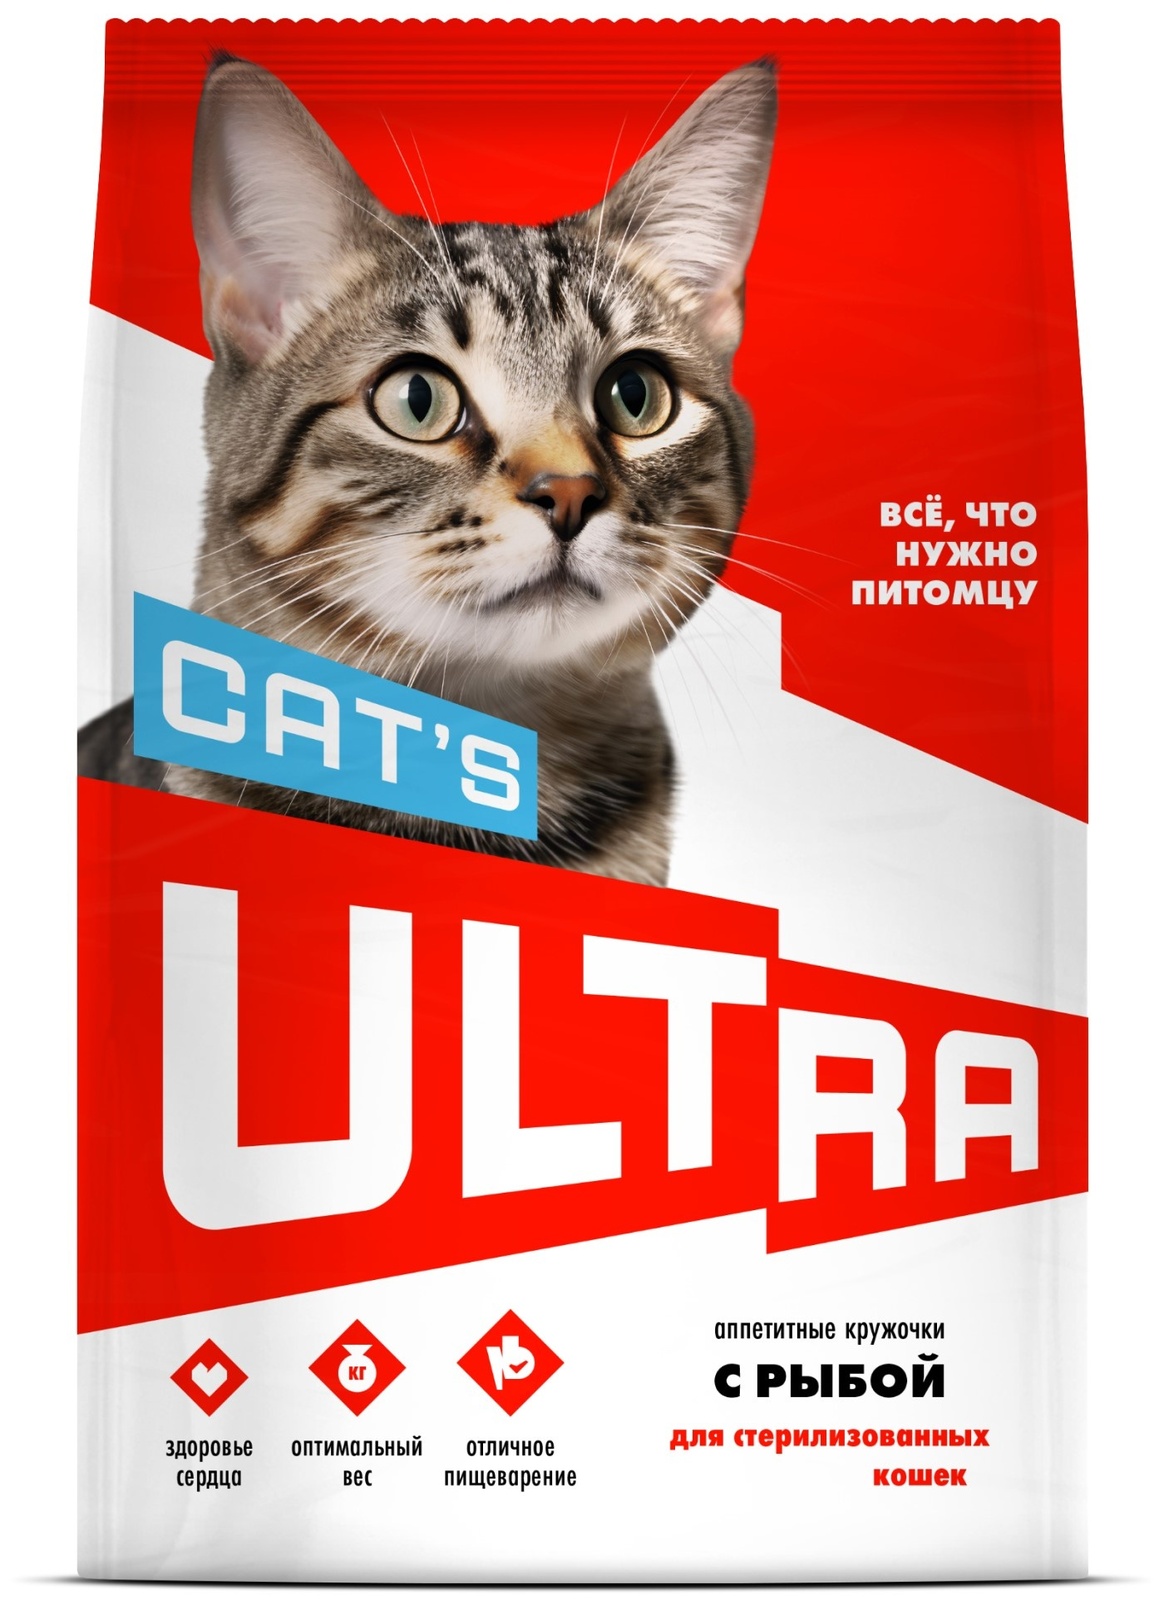 ULTRA ULTRA аппетитные кружочки с рыбой для стерилизованных кошек (1,5 кг) ultra ultra аппетитные кружочки 3 вида мяса для взрослых собак всех пород 12 кг